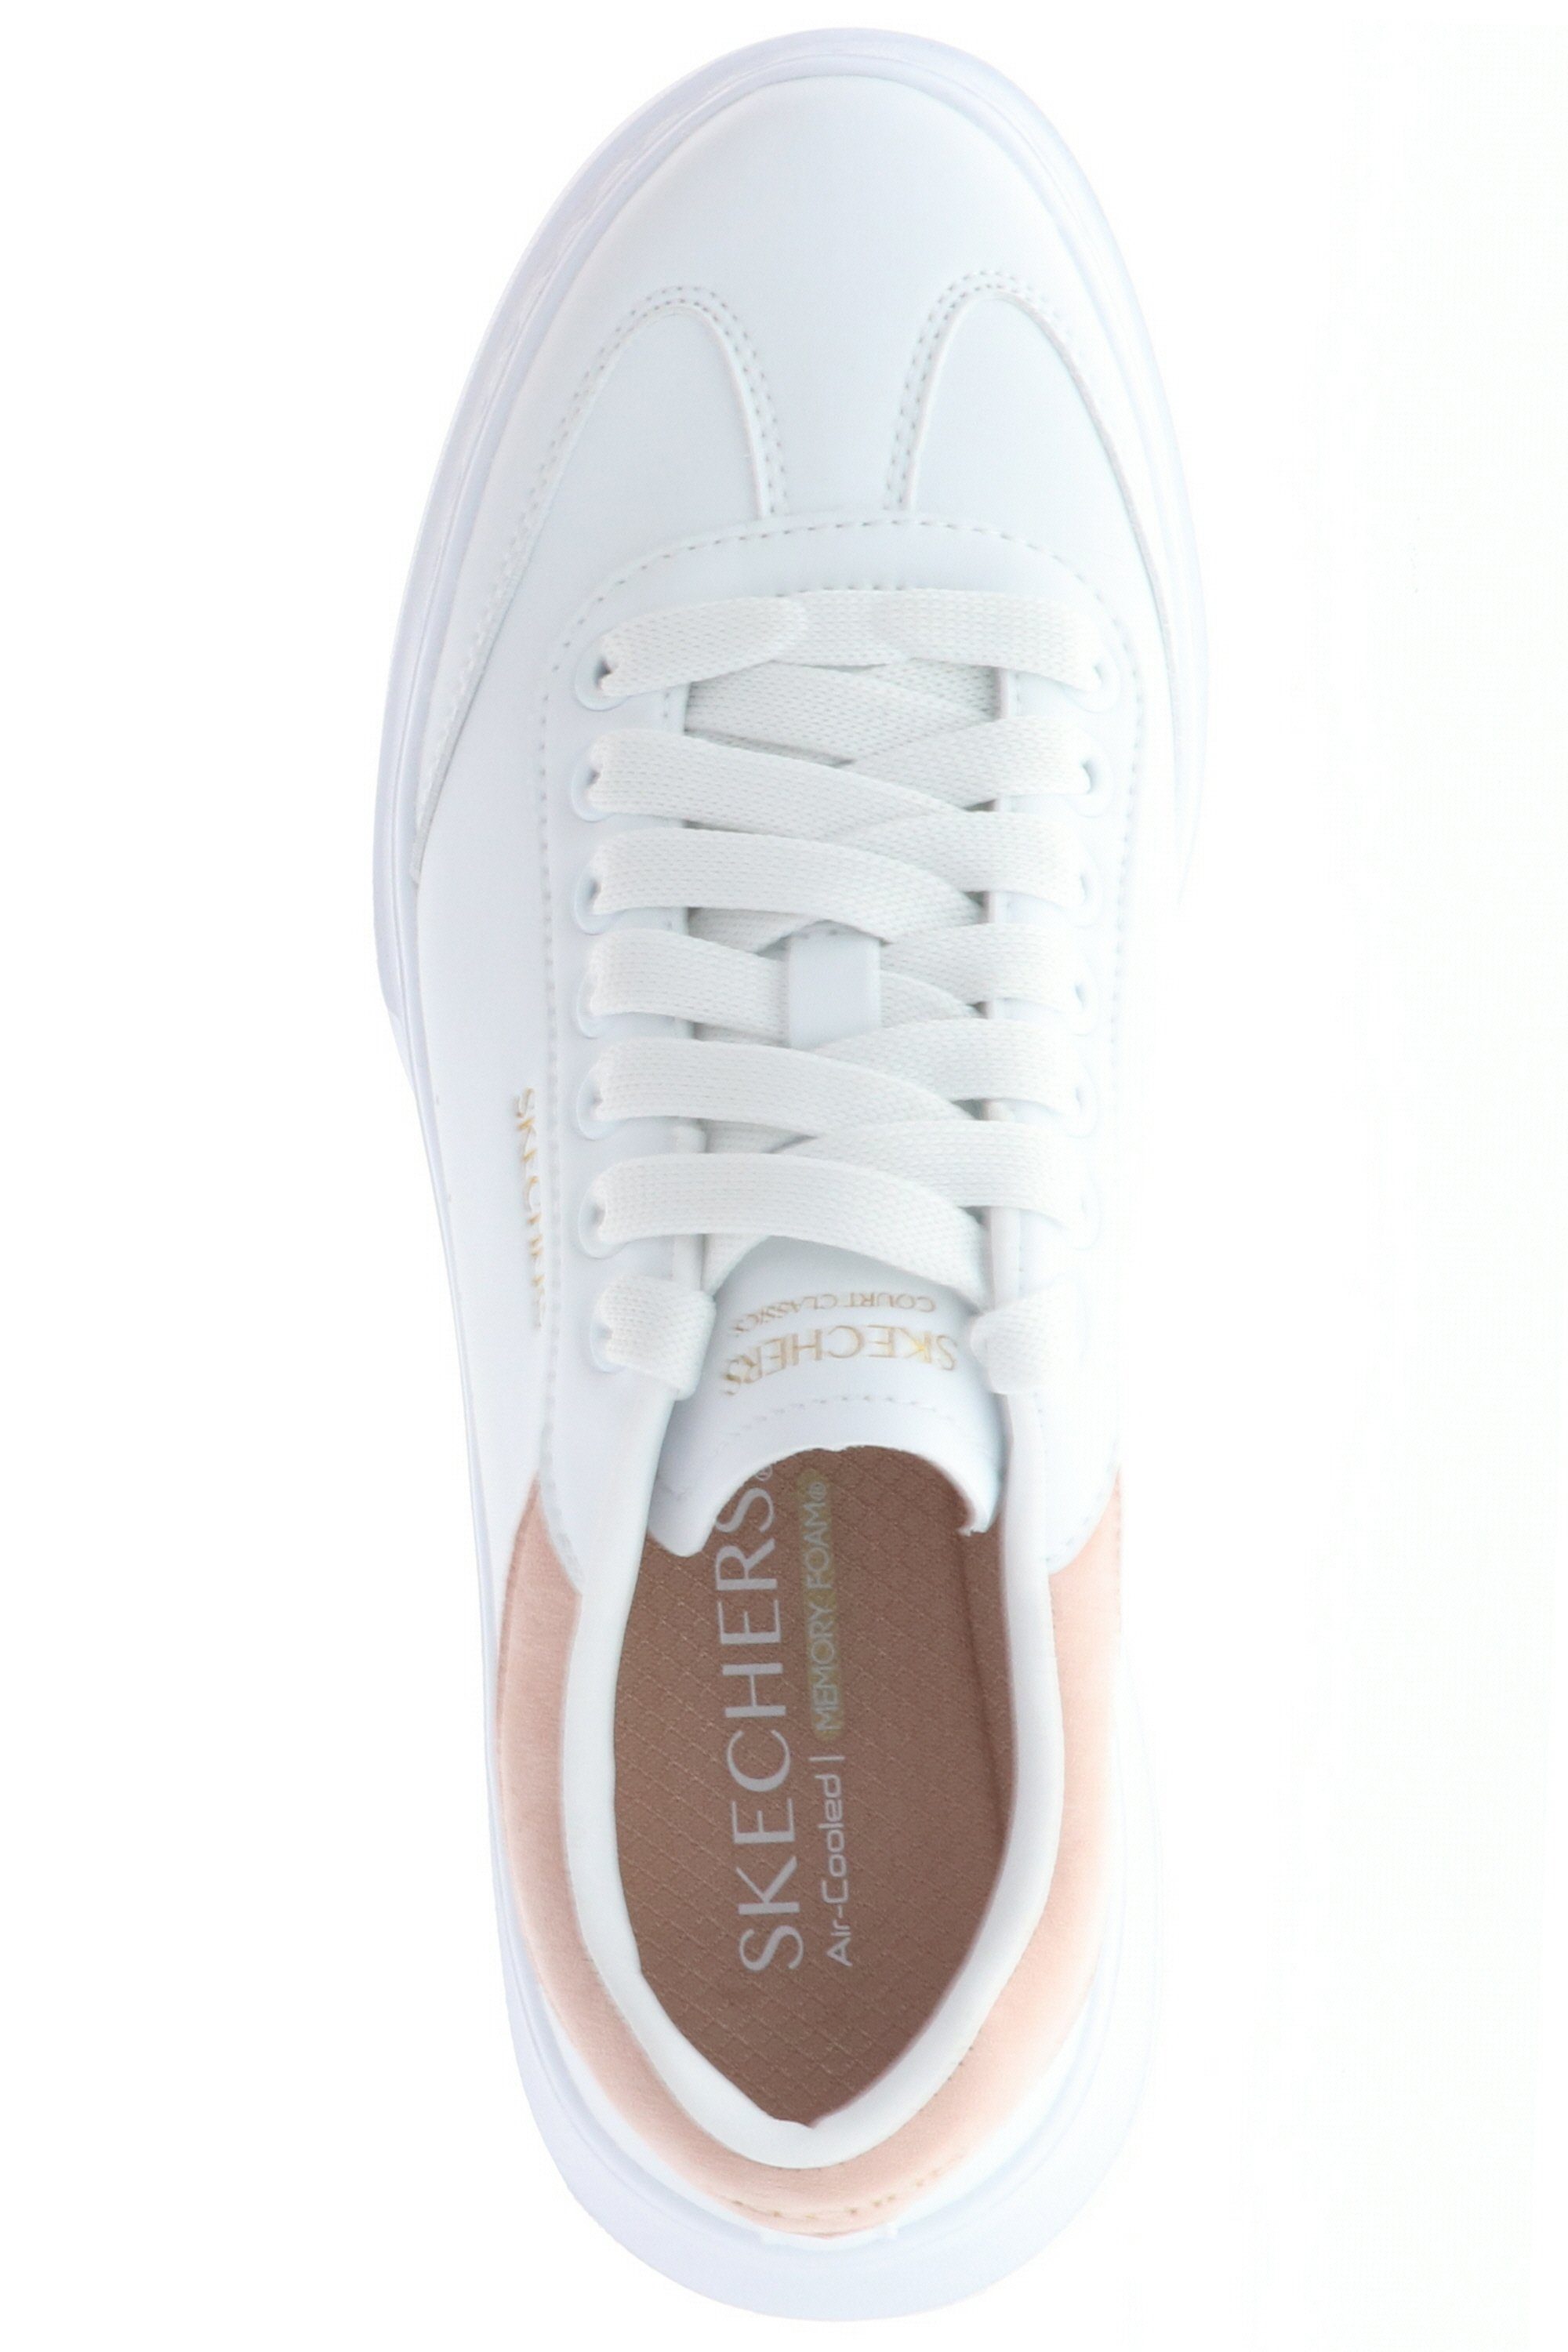 White/Pink aus Behavior Sohle (20203205) 185060/WPK Sneaker Cordova Gummi rutschhemmende Classic-Best white/pink Skechers